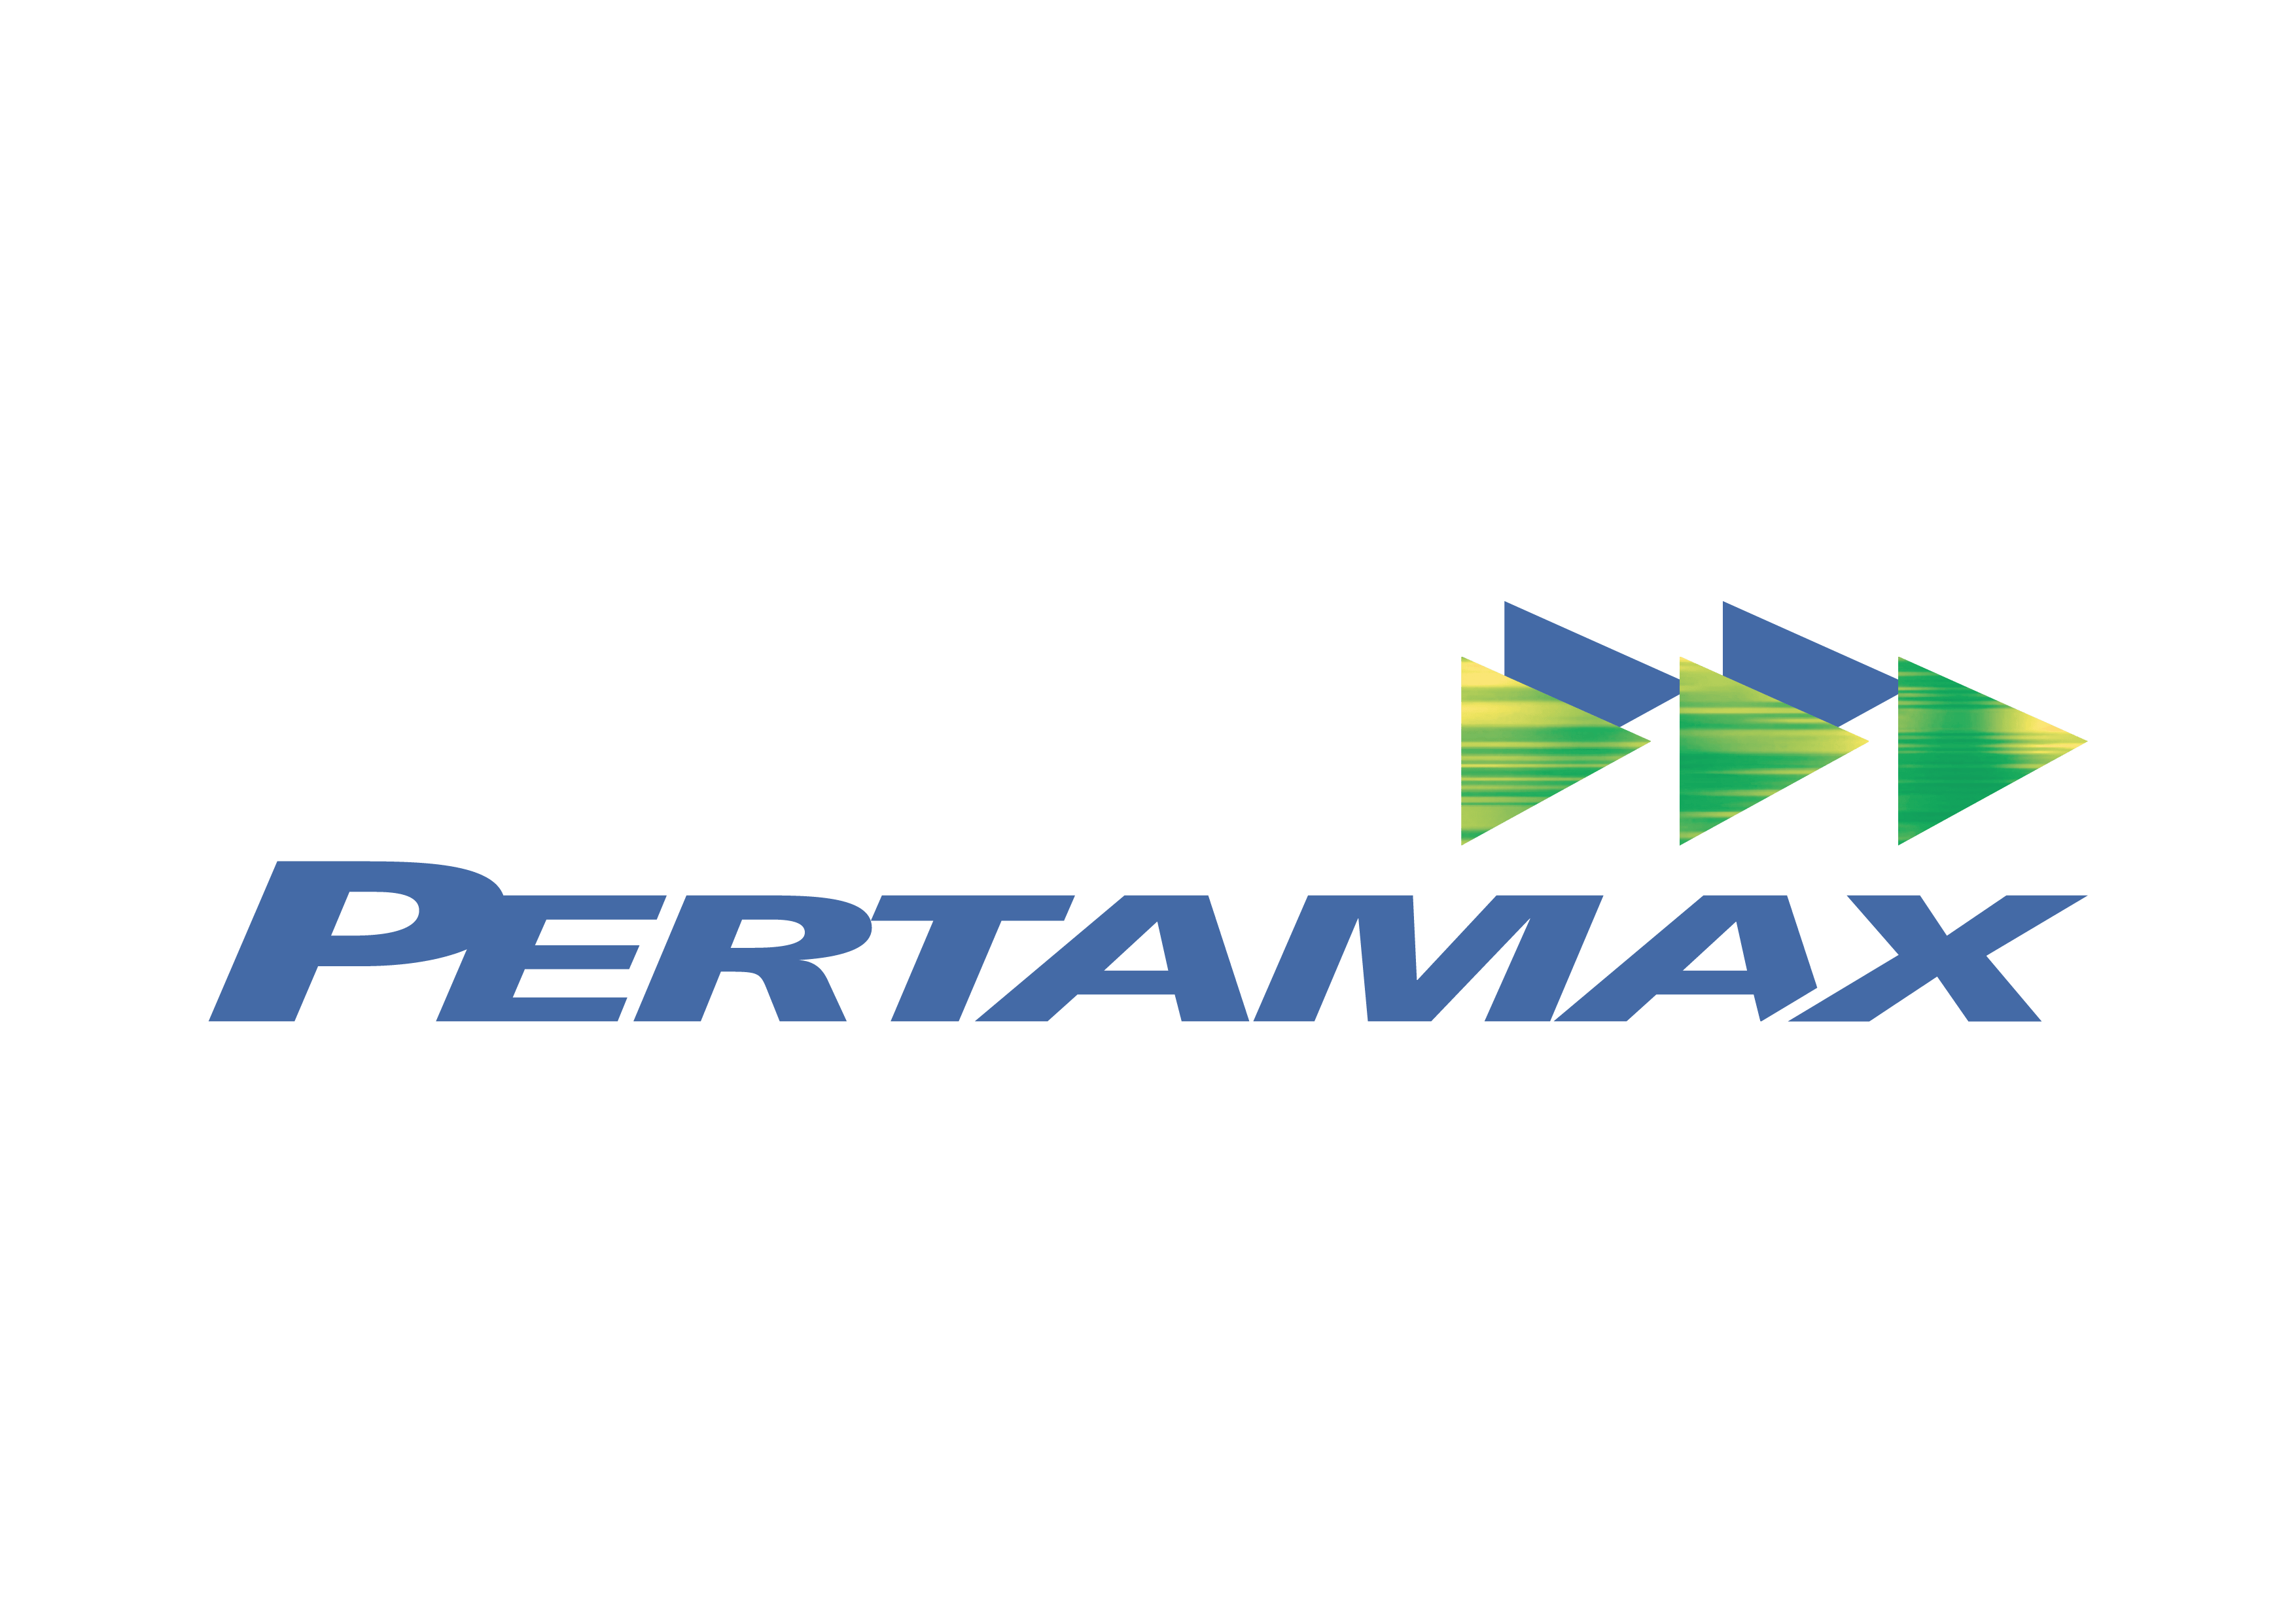 PT Pertamina (Persero)